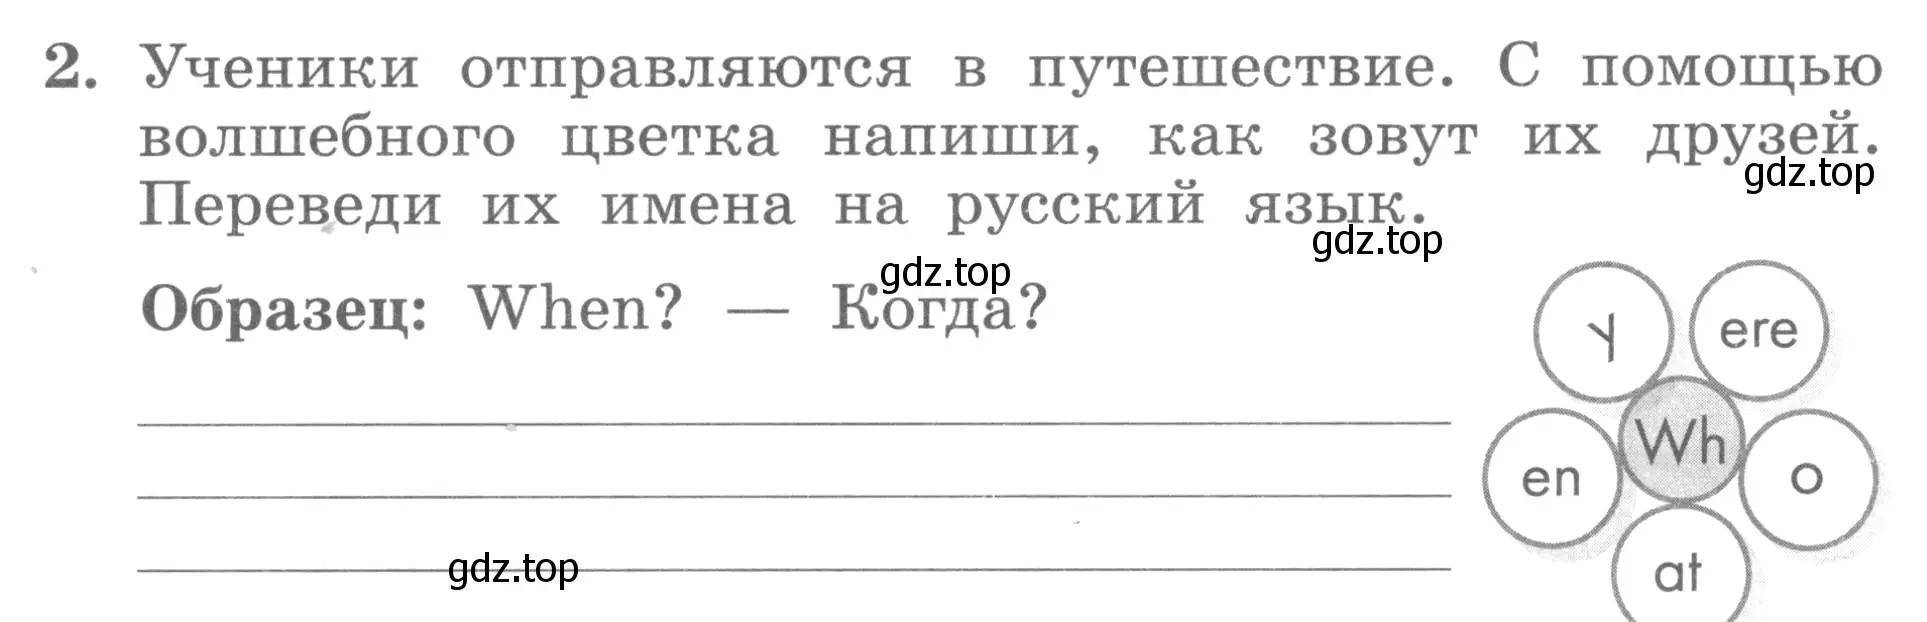 Условие номер 2 (страница 25) гдз по английскому языку 3 класс Биболетова, Денисенко, рабочая тетрадь